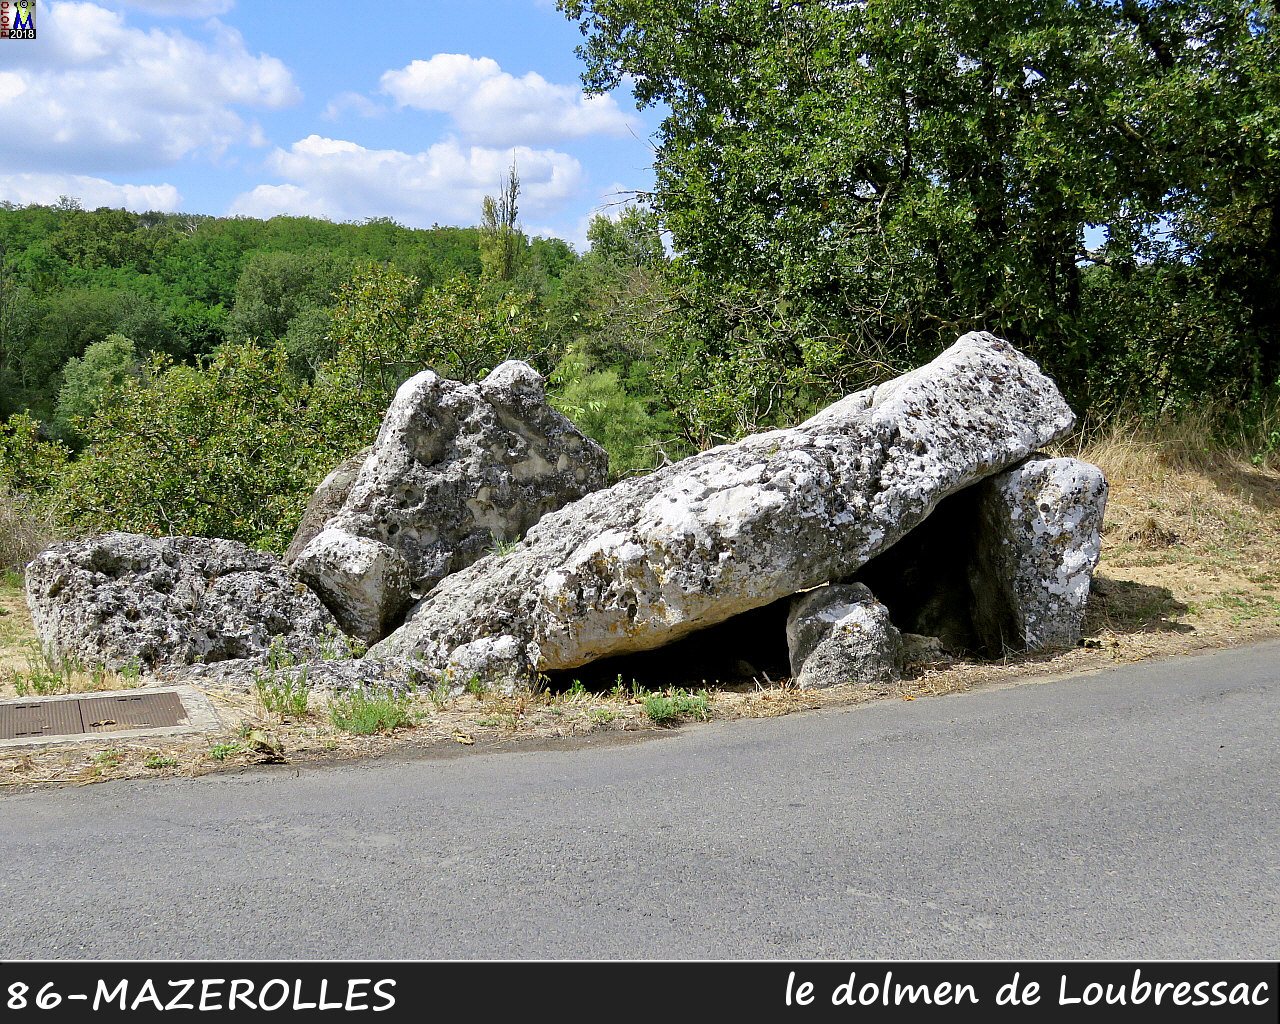 86MAZEROLLES_dolmen_1000.jpg